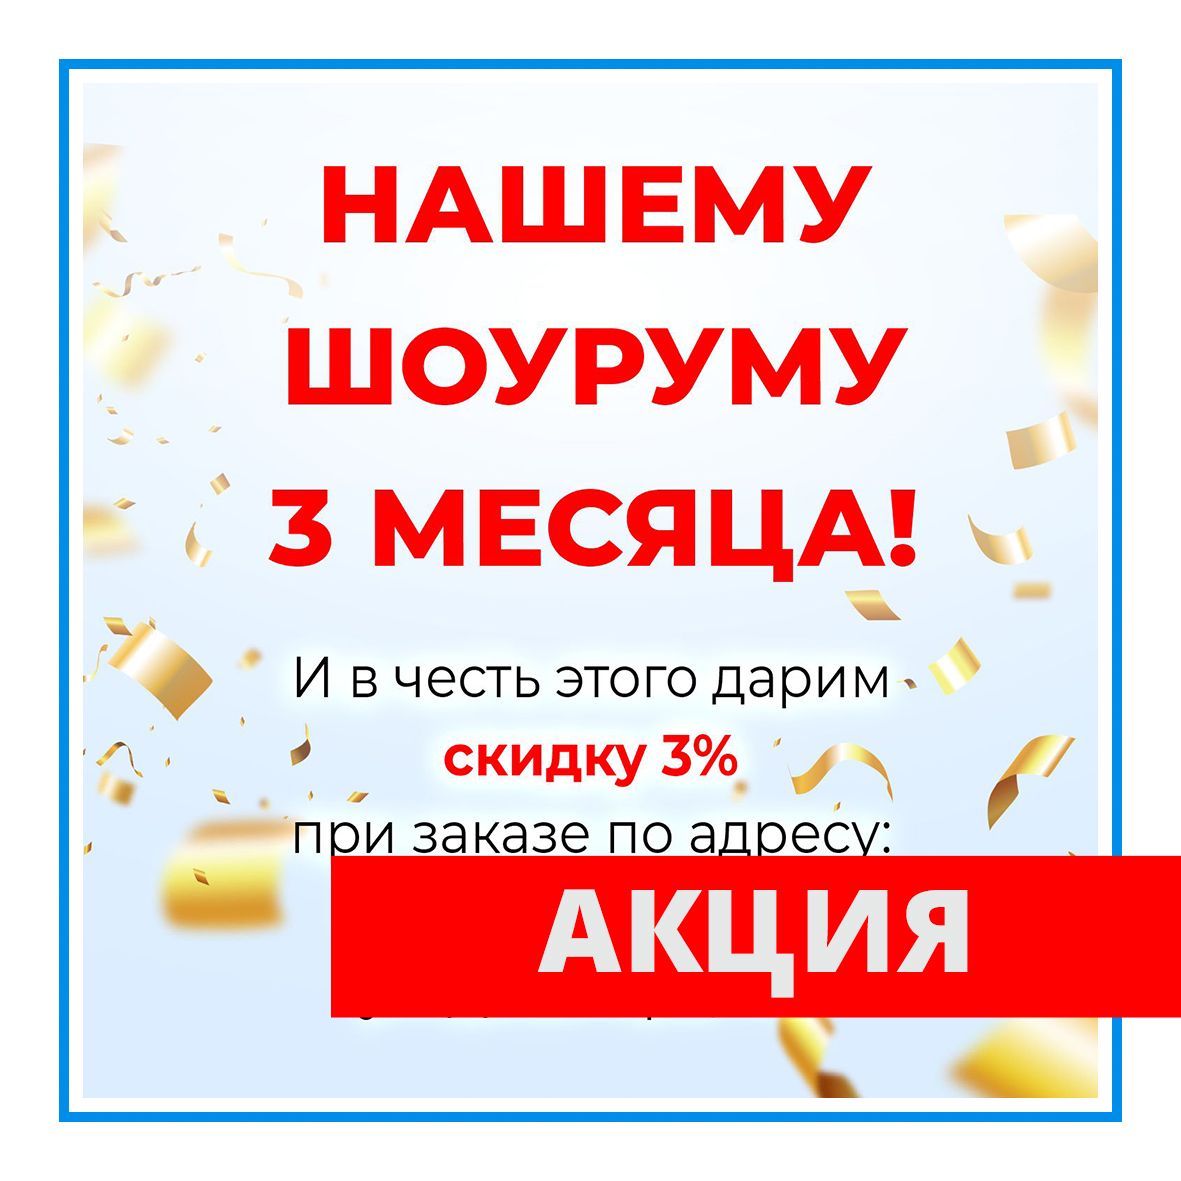 Купить банки, бутылки и другую стеклянную и пластиковую тару в Ростове-на-Дону по цене со скидкой 3%